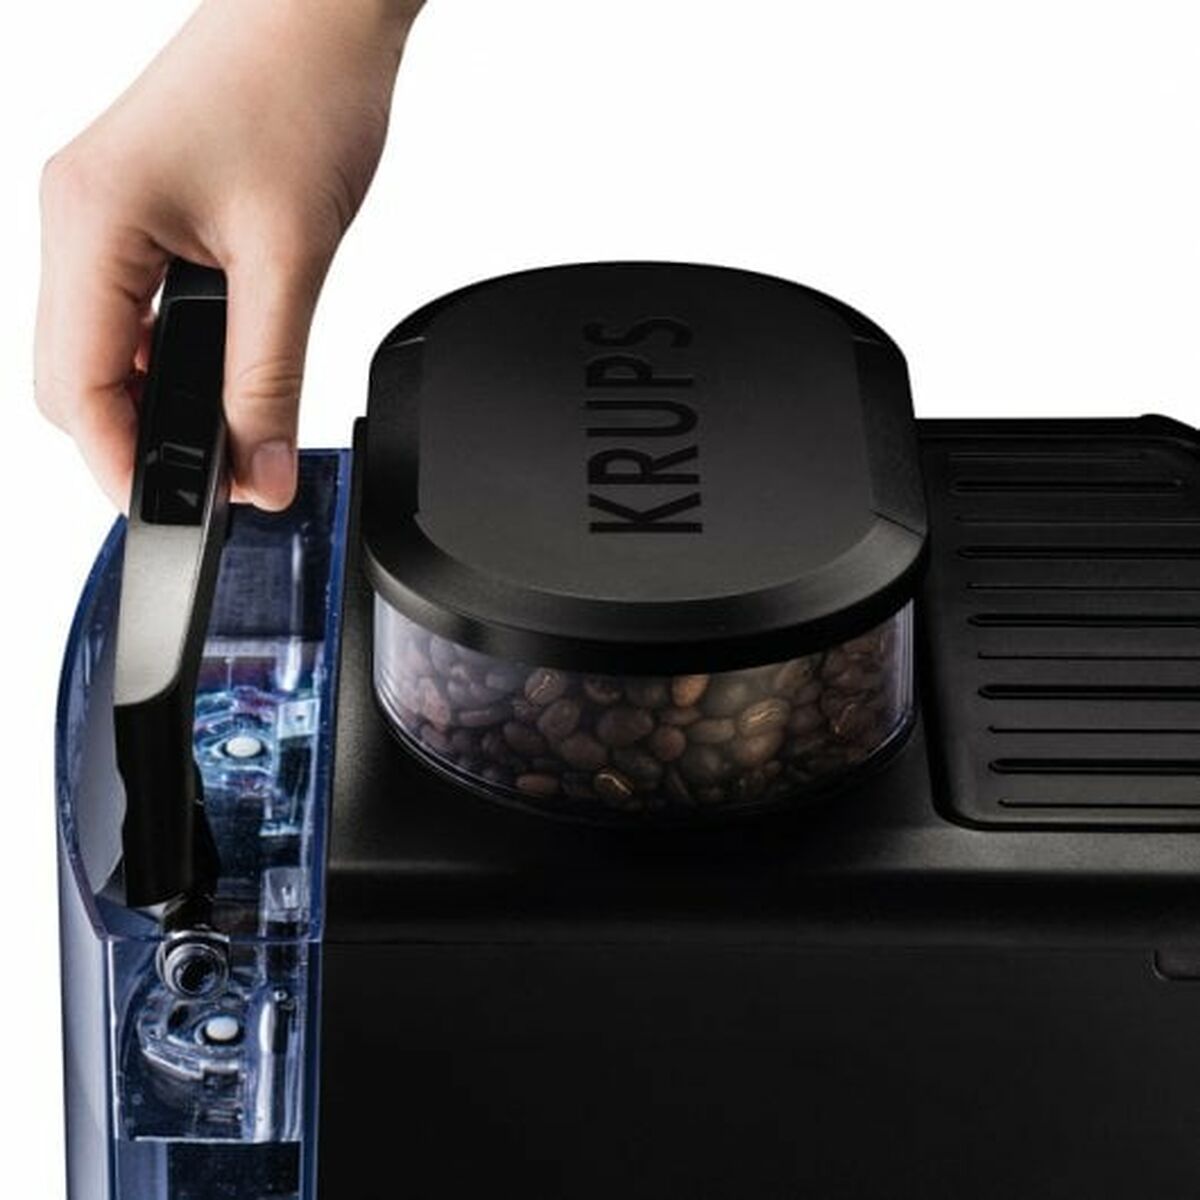 Superautomatisch koffiezetapparaat Krups Arabica EA8110 Zwart 1450 W 15 bar